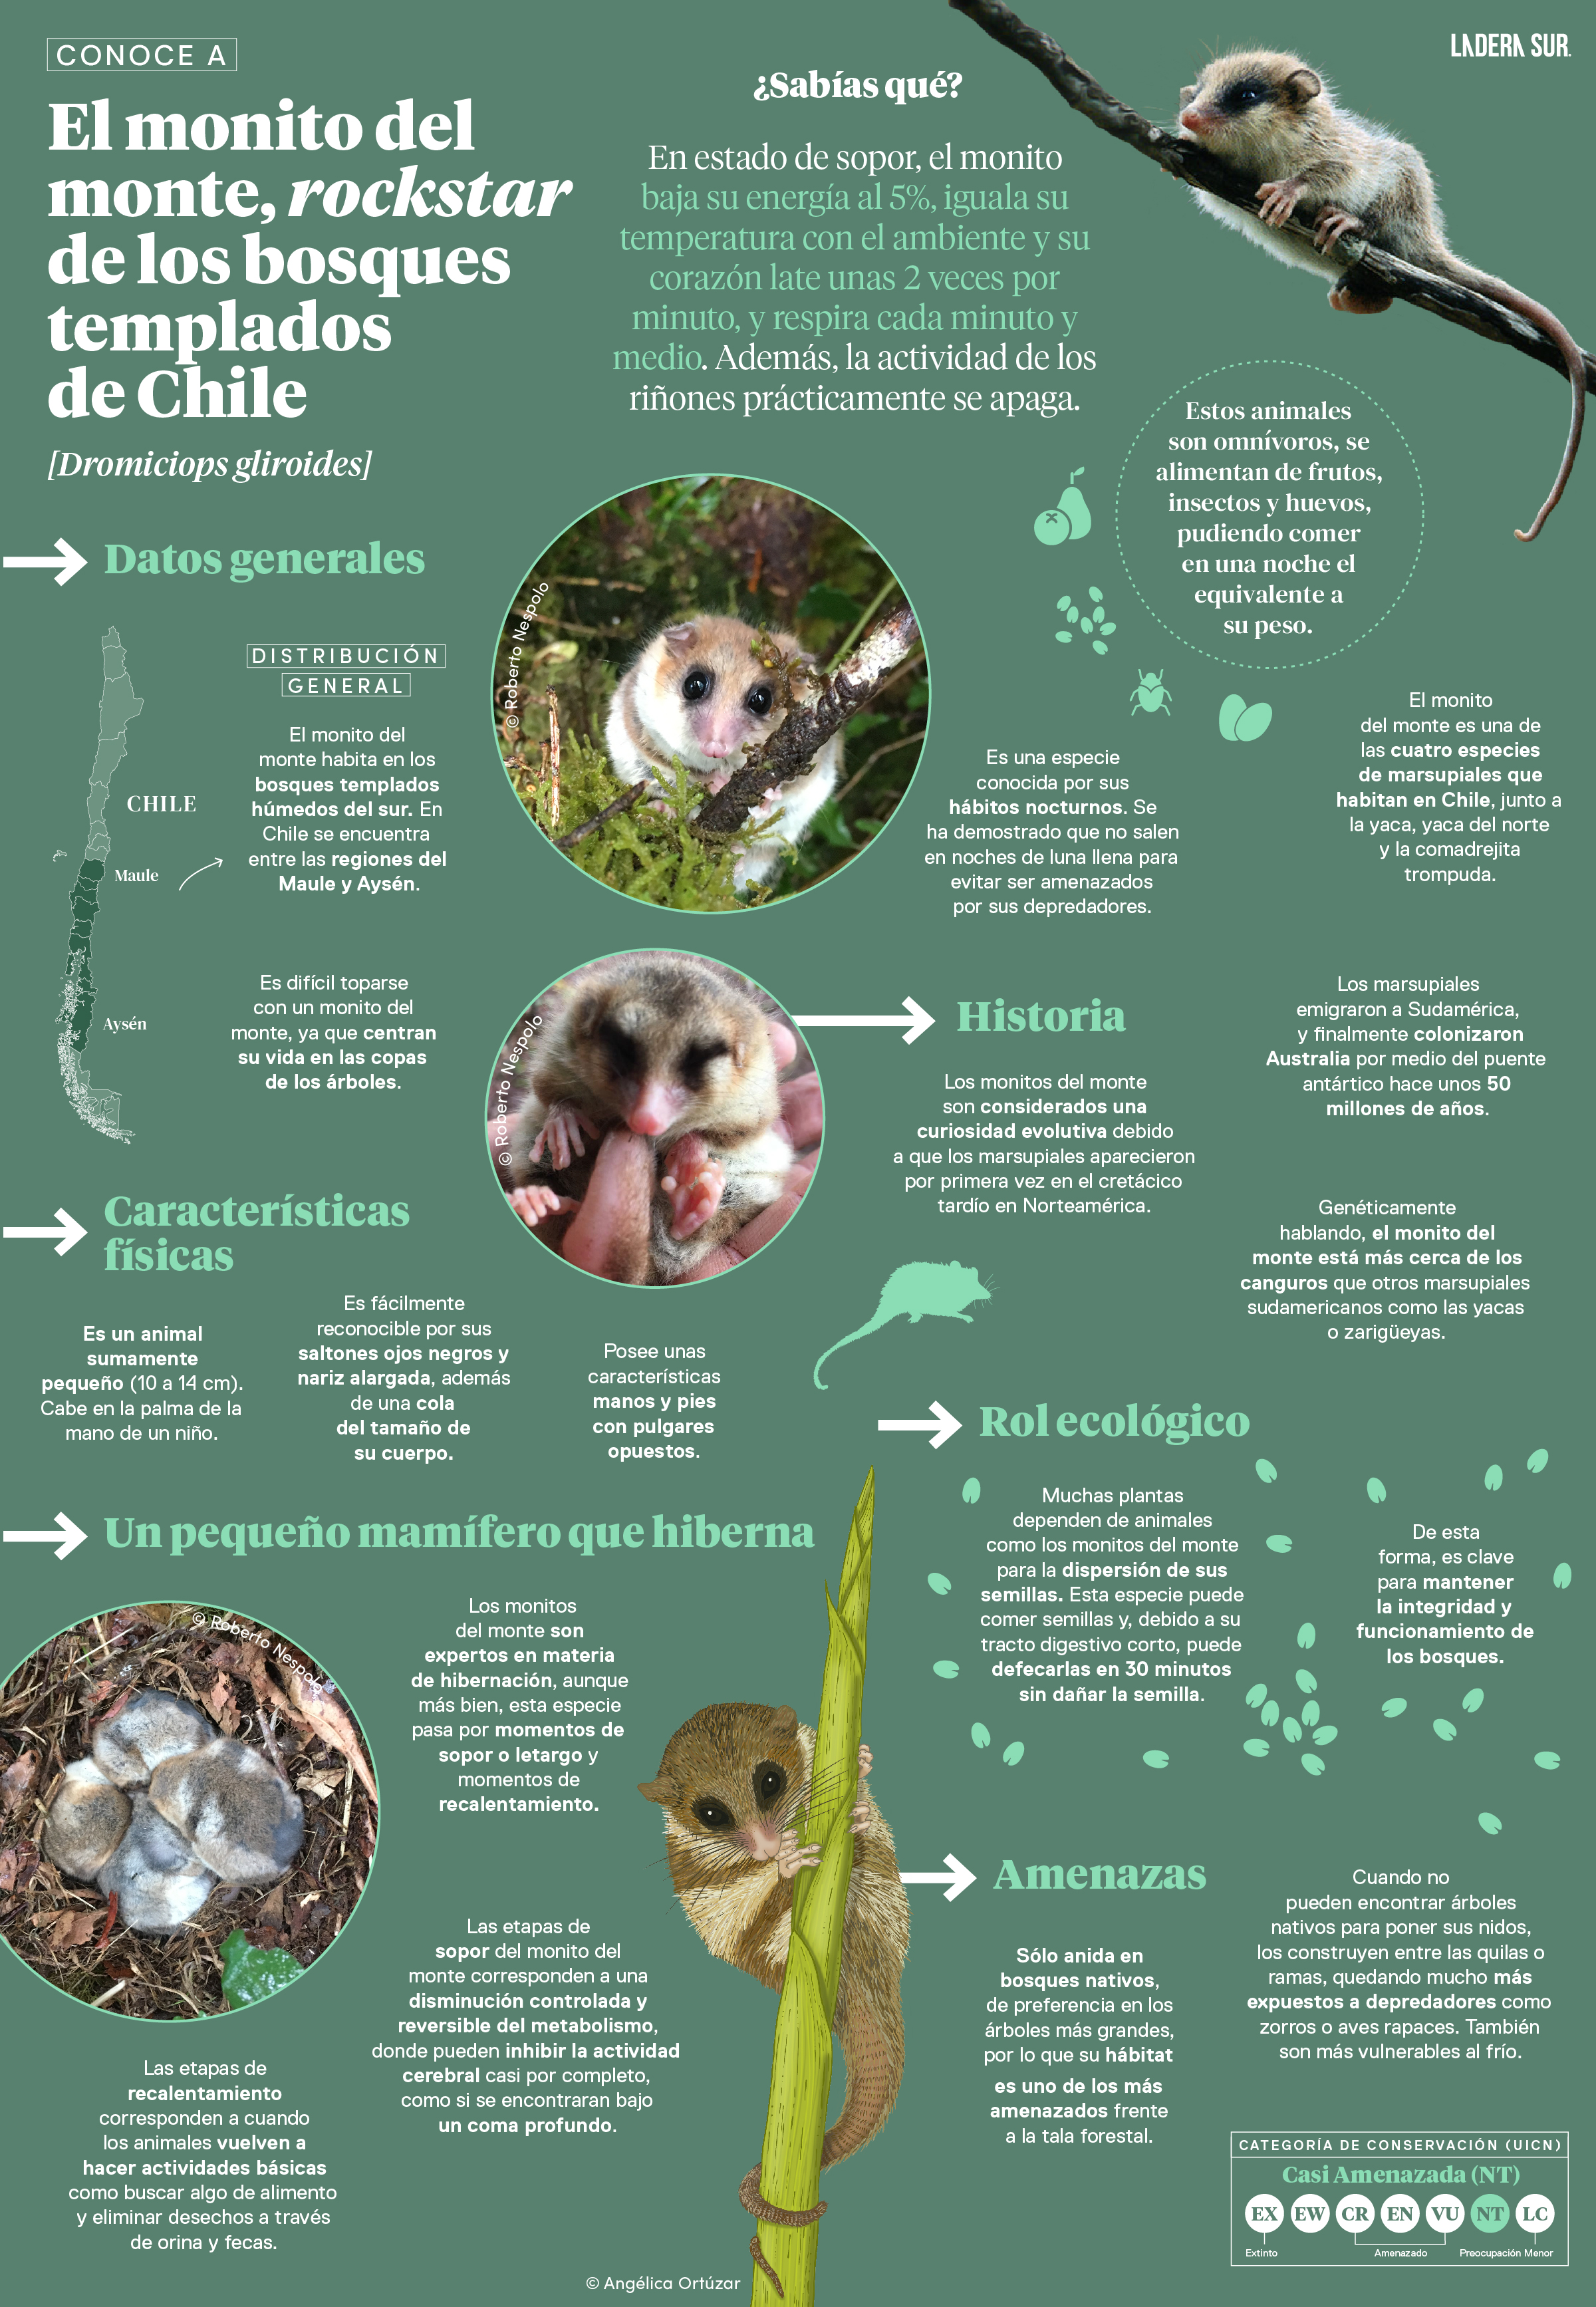 El monito del monte, rockstar de los bosques templados de Chile